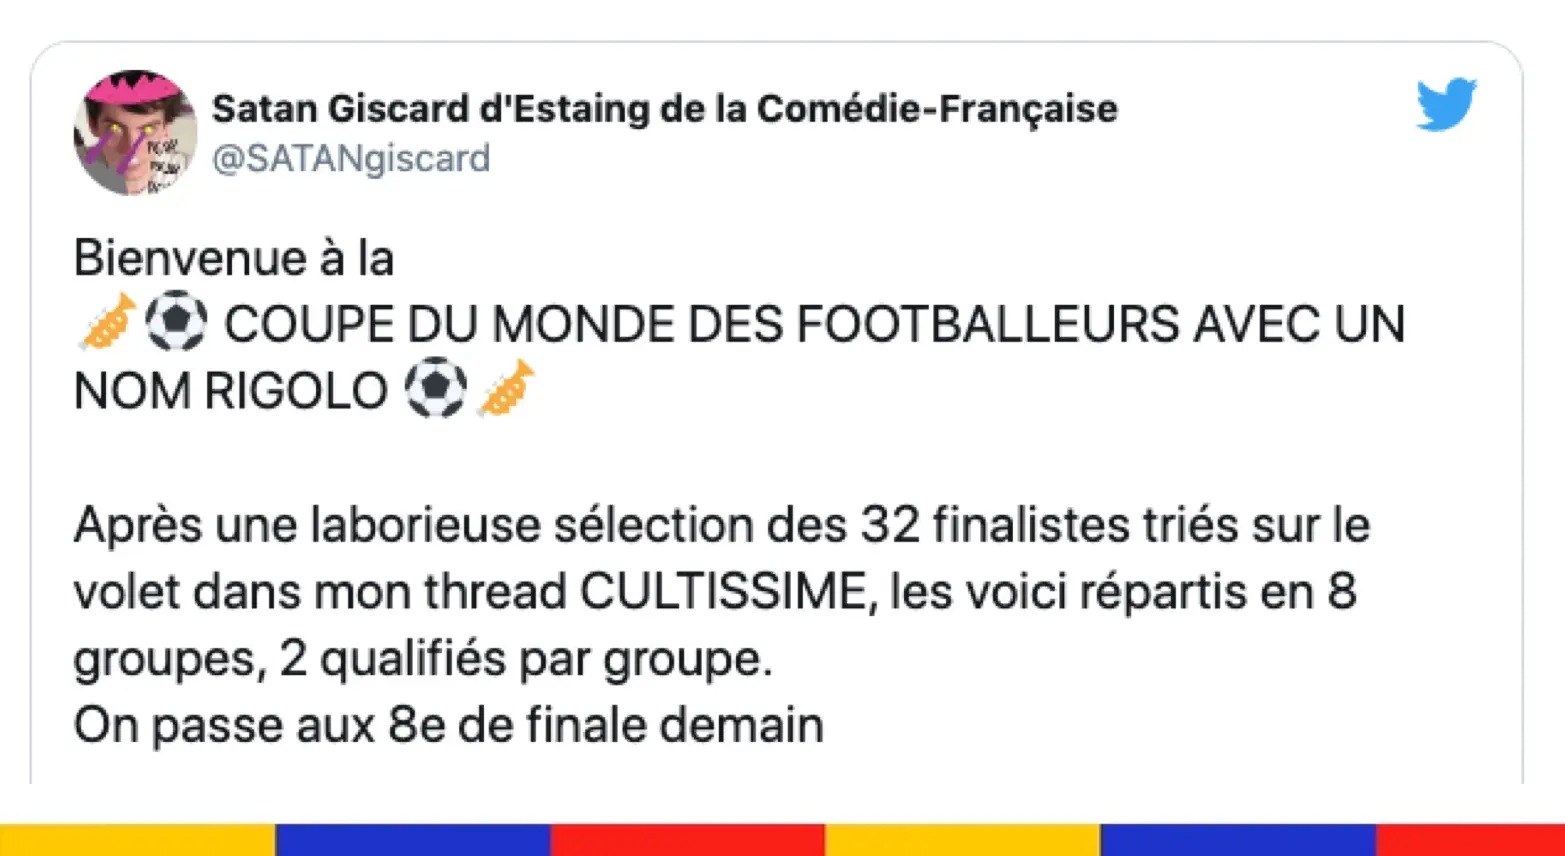 Pendant ce temps, la Coupe du monde des footballeurs avec un nom rigolo a lieu sur Twitter